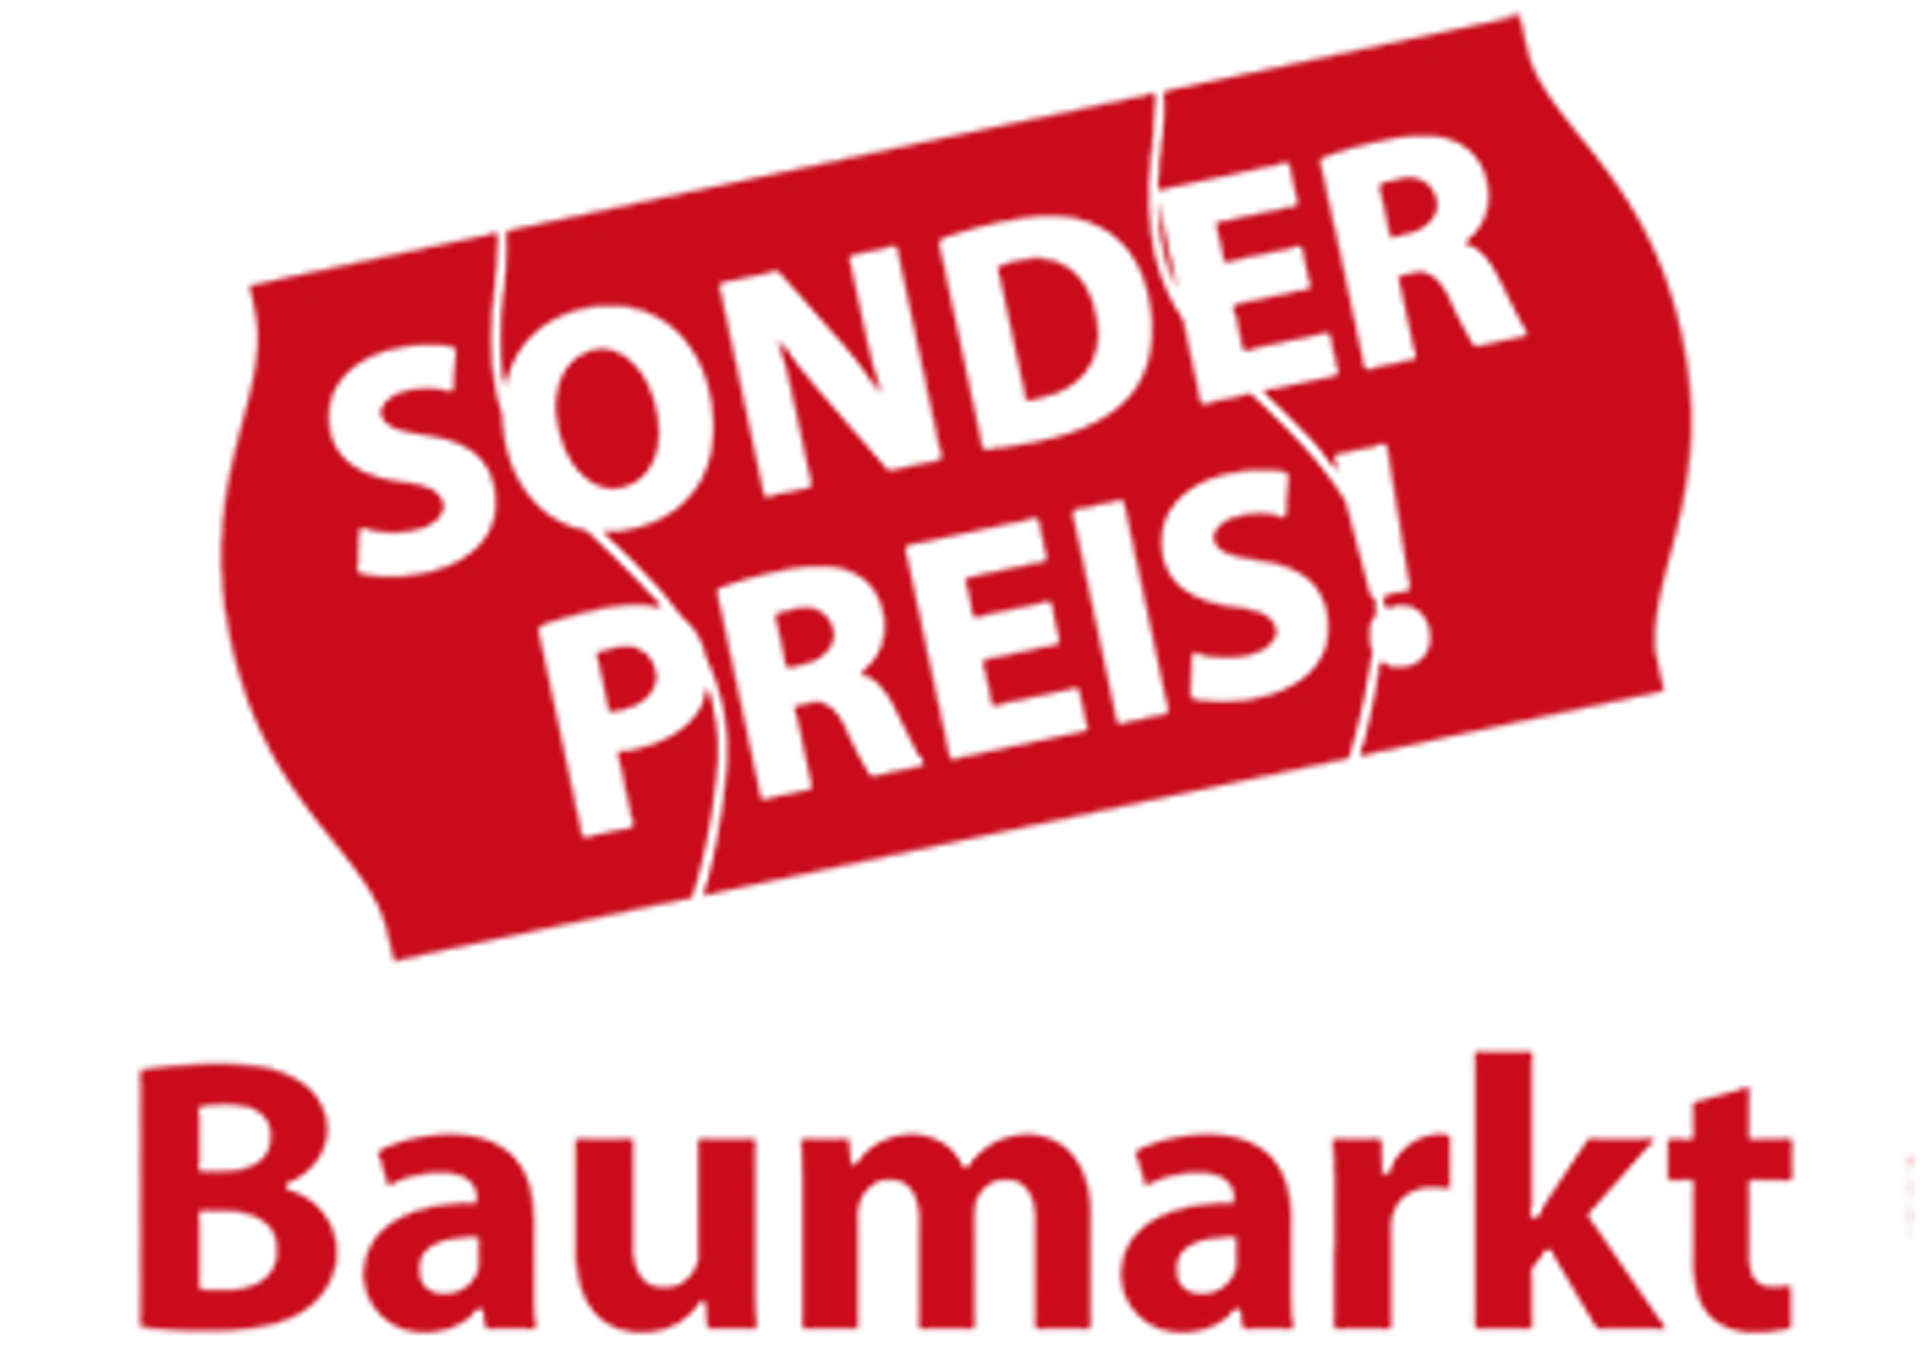 SONDERPREIS-BAUMARKT logo die aktuell Flugblatt